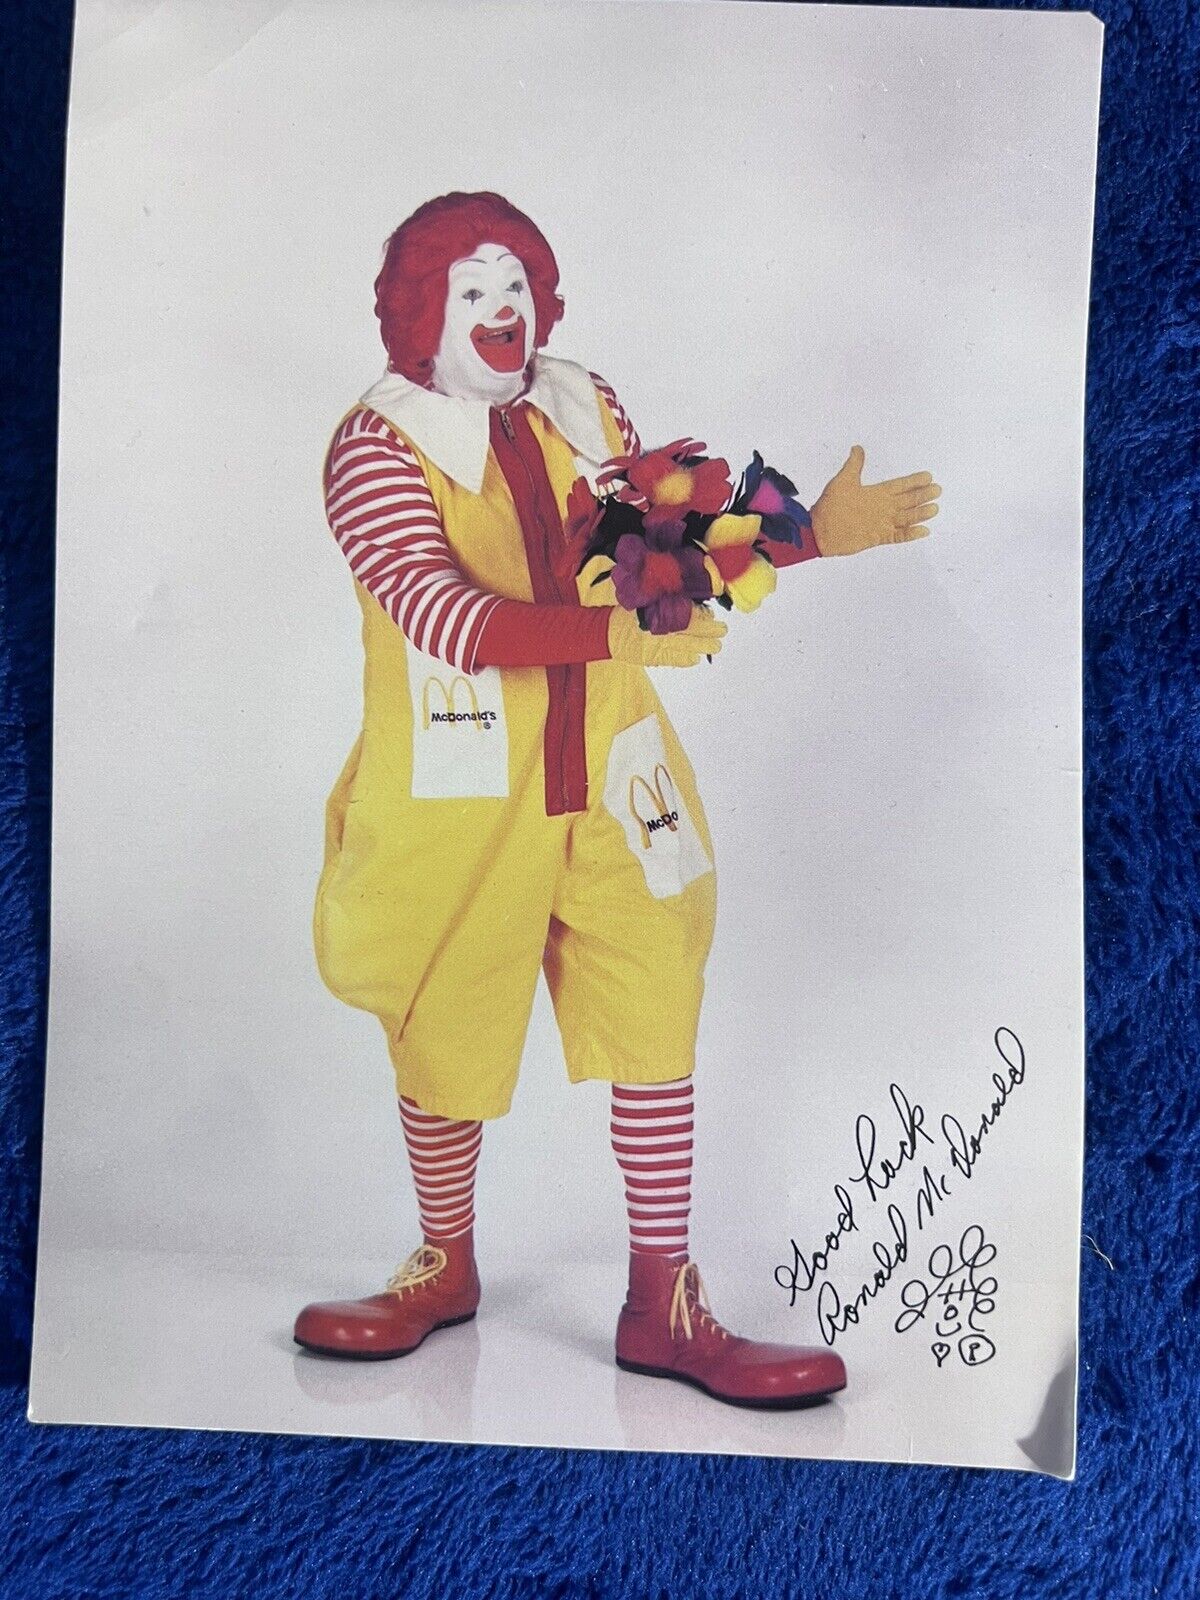 Signed Ronald McDonald photo 5 x 7 vintage